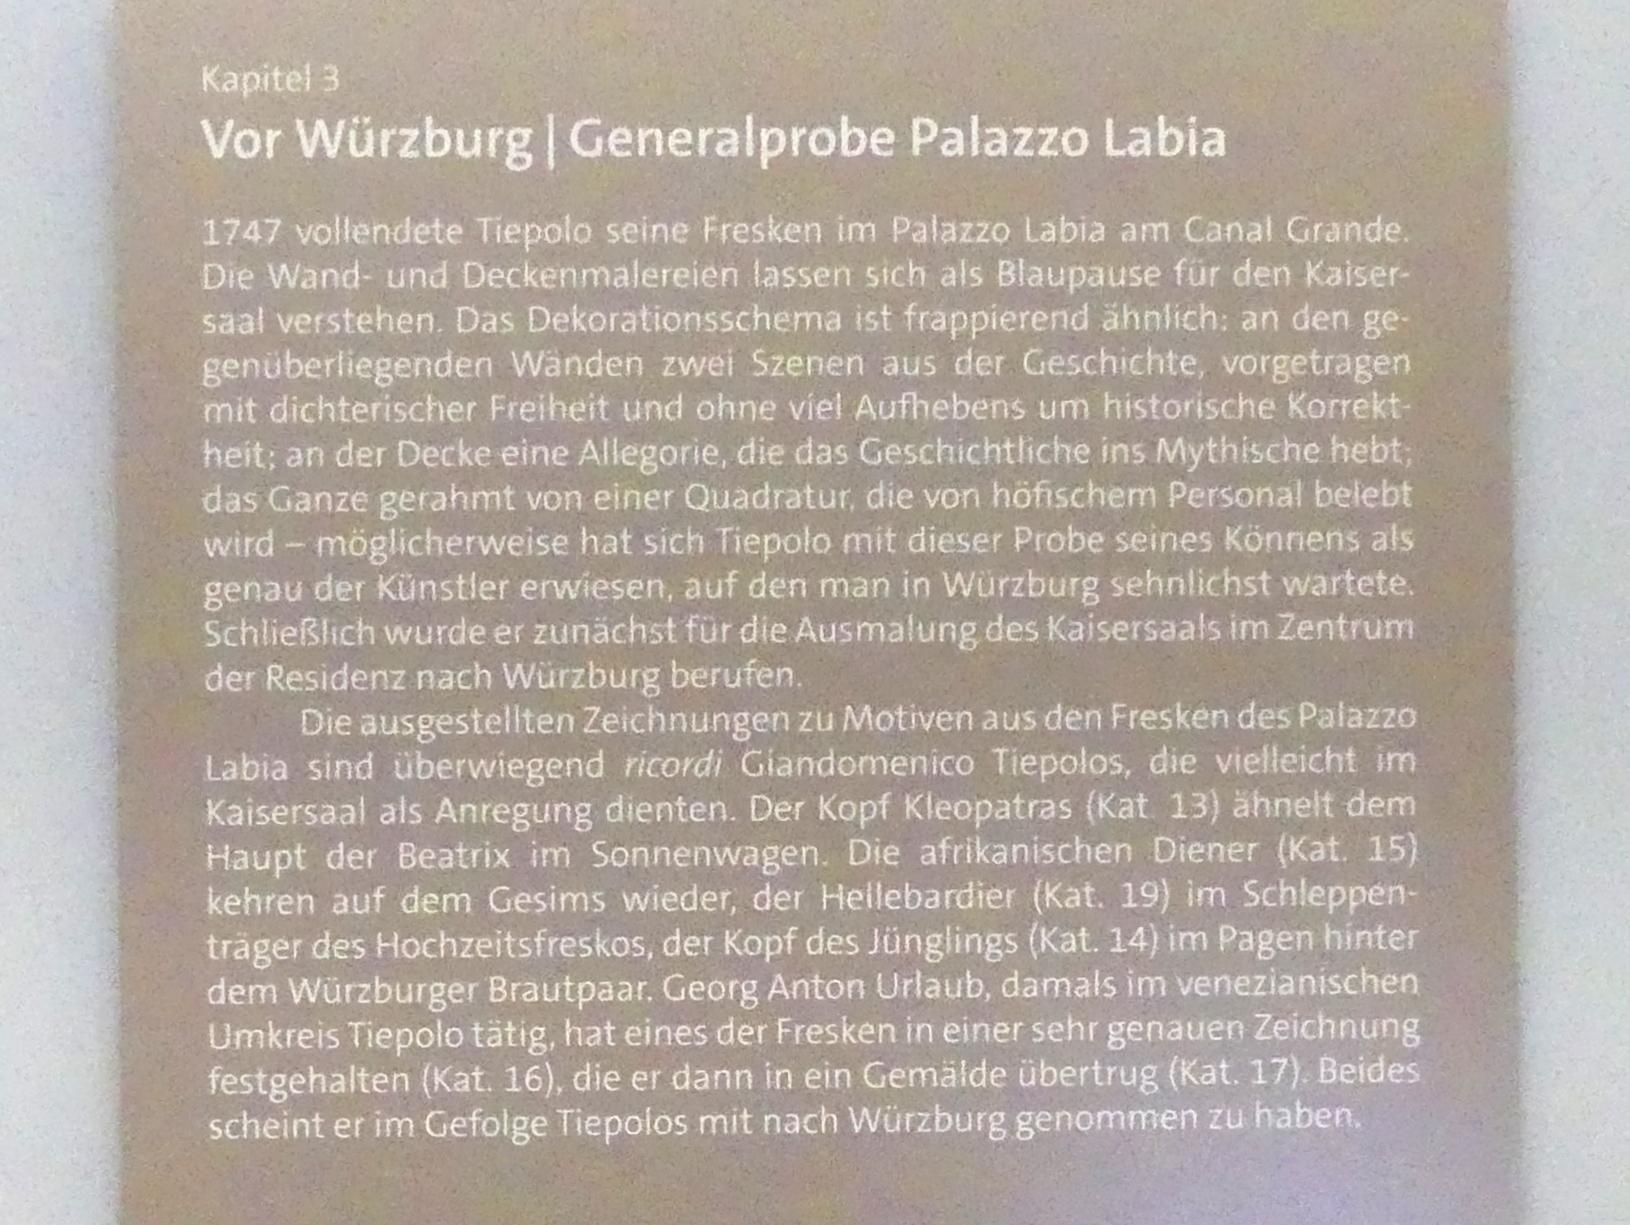 Würzburg, Martin von Wagner Museum, Ausstellung "Tiepolo und seine Zeit in Würzburg" vom 31.10.2020-15.07.2021, Bild 4/12